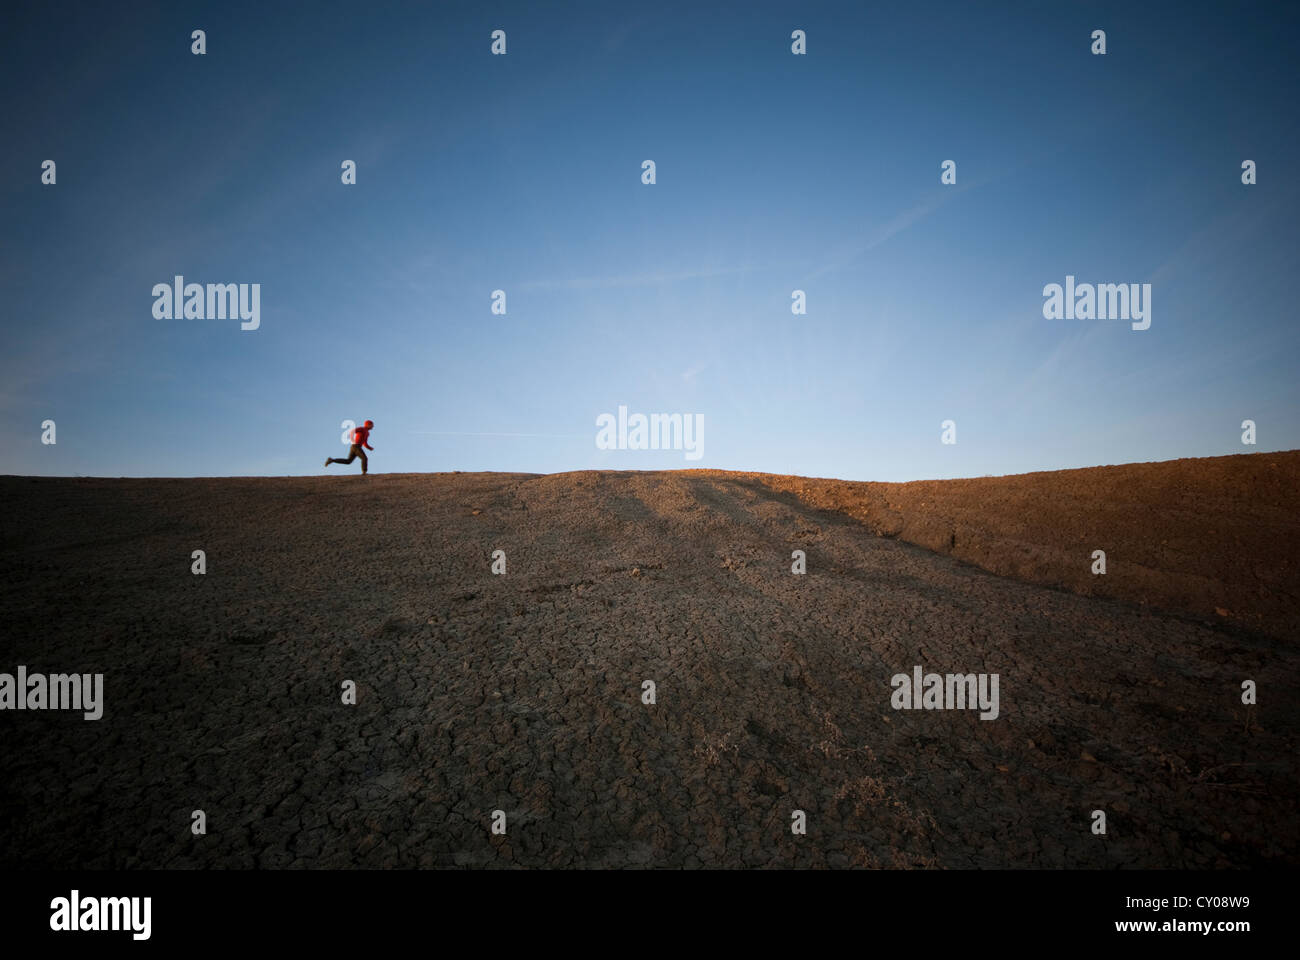 Male figures running in desert Stock Photo